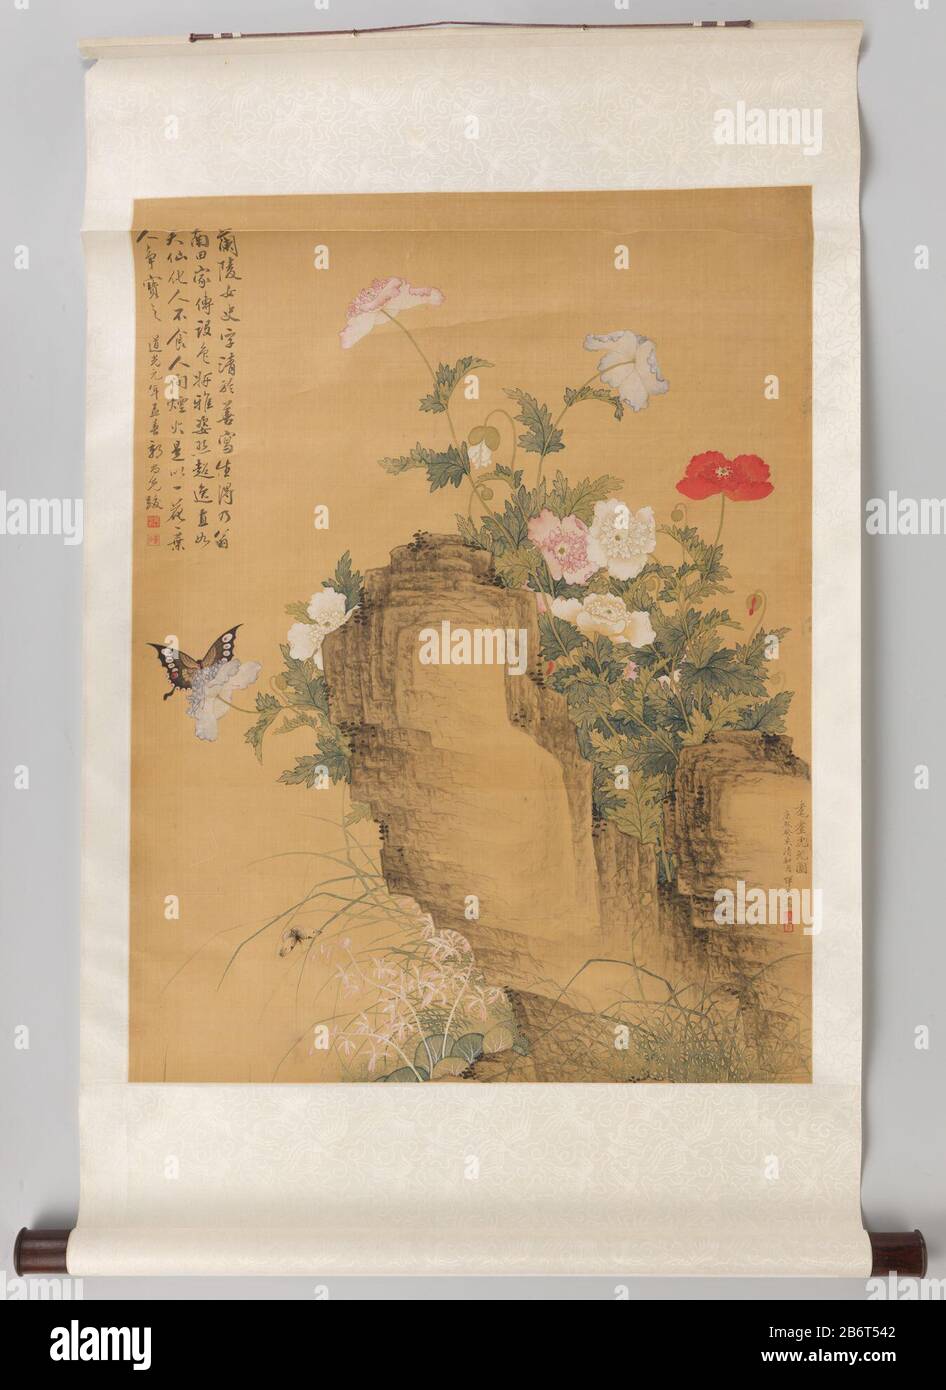 Hangrol met papavers, vlinders en een kat (bovenste gedeelte) Hangrol met papavers, vlinders en een kat (bovenste gedeelte). Manufacturer : schilder: Yun BingPlaats manufacture: schilder: ChinaJiangsuChangzhou Dating: 1683School / stijl: Qing-dynastie (1644-1912) / Kangxi-periode (1662-1722) Material: zijde inkt  Dimensions: d 4,5 cm.  × l 82,5 cm.  (inclusief rol)verpakking (doos): h 7,5 cm.  × b 90,5 cm.  × d 9,5 cm. Stock Photo